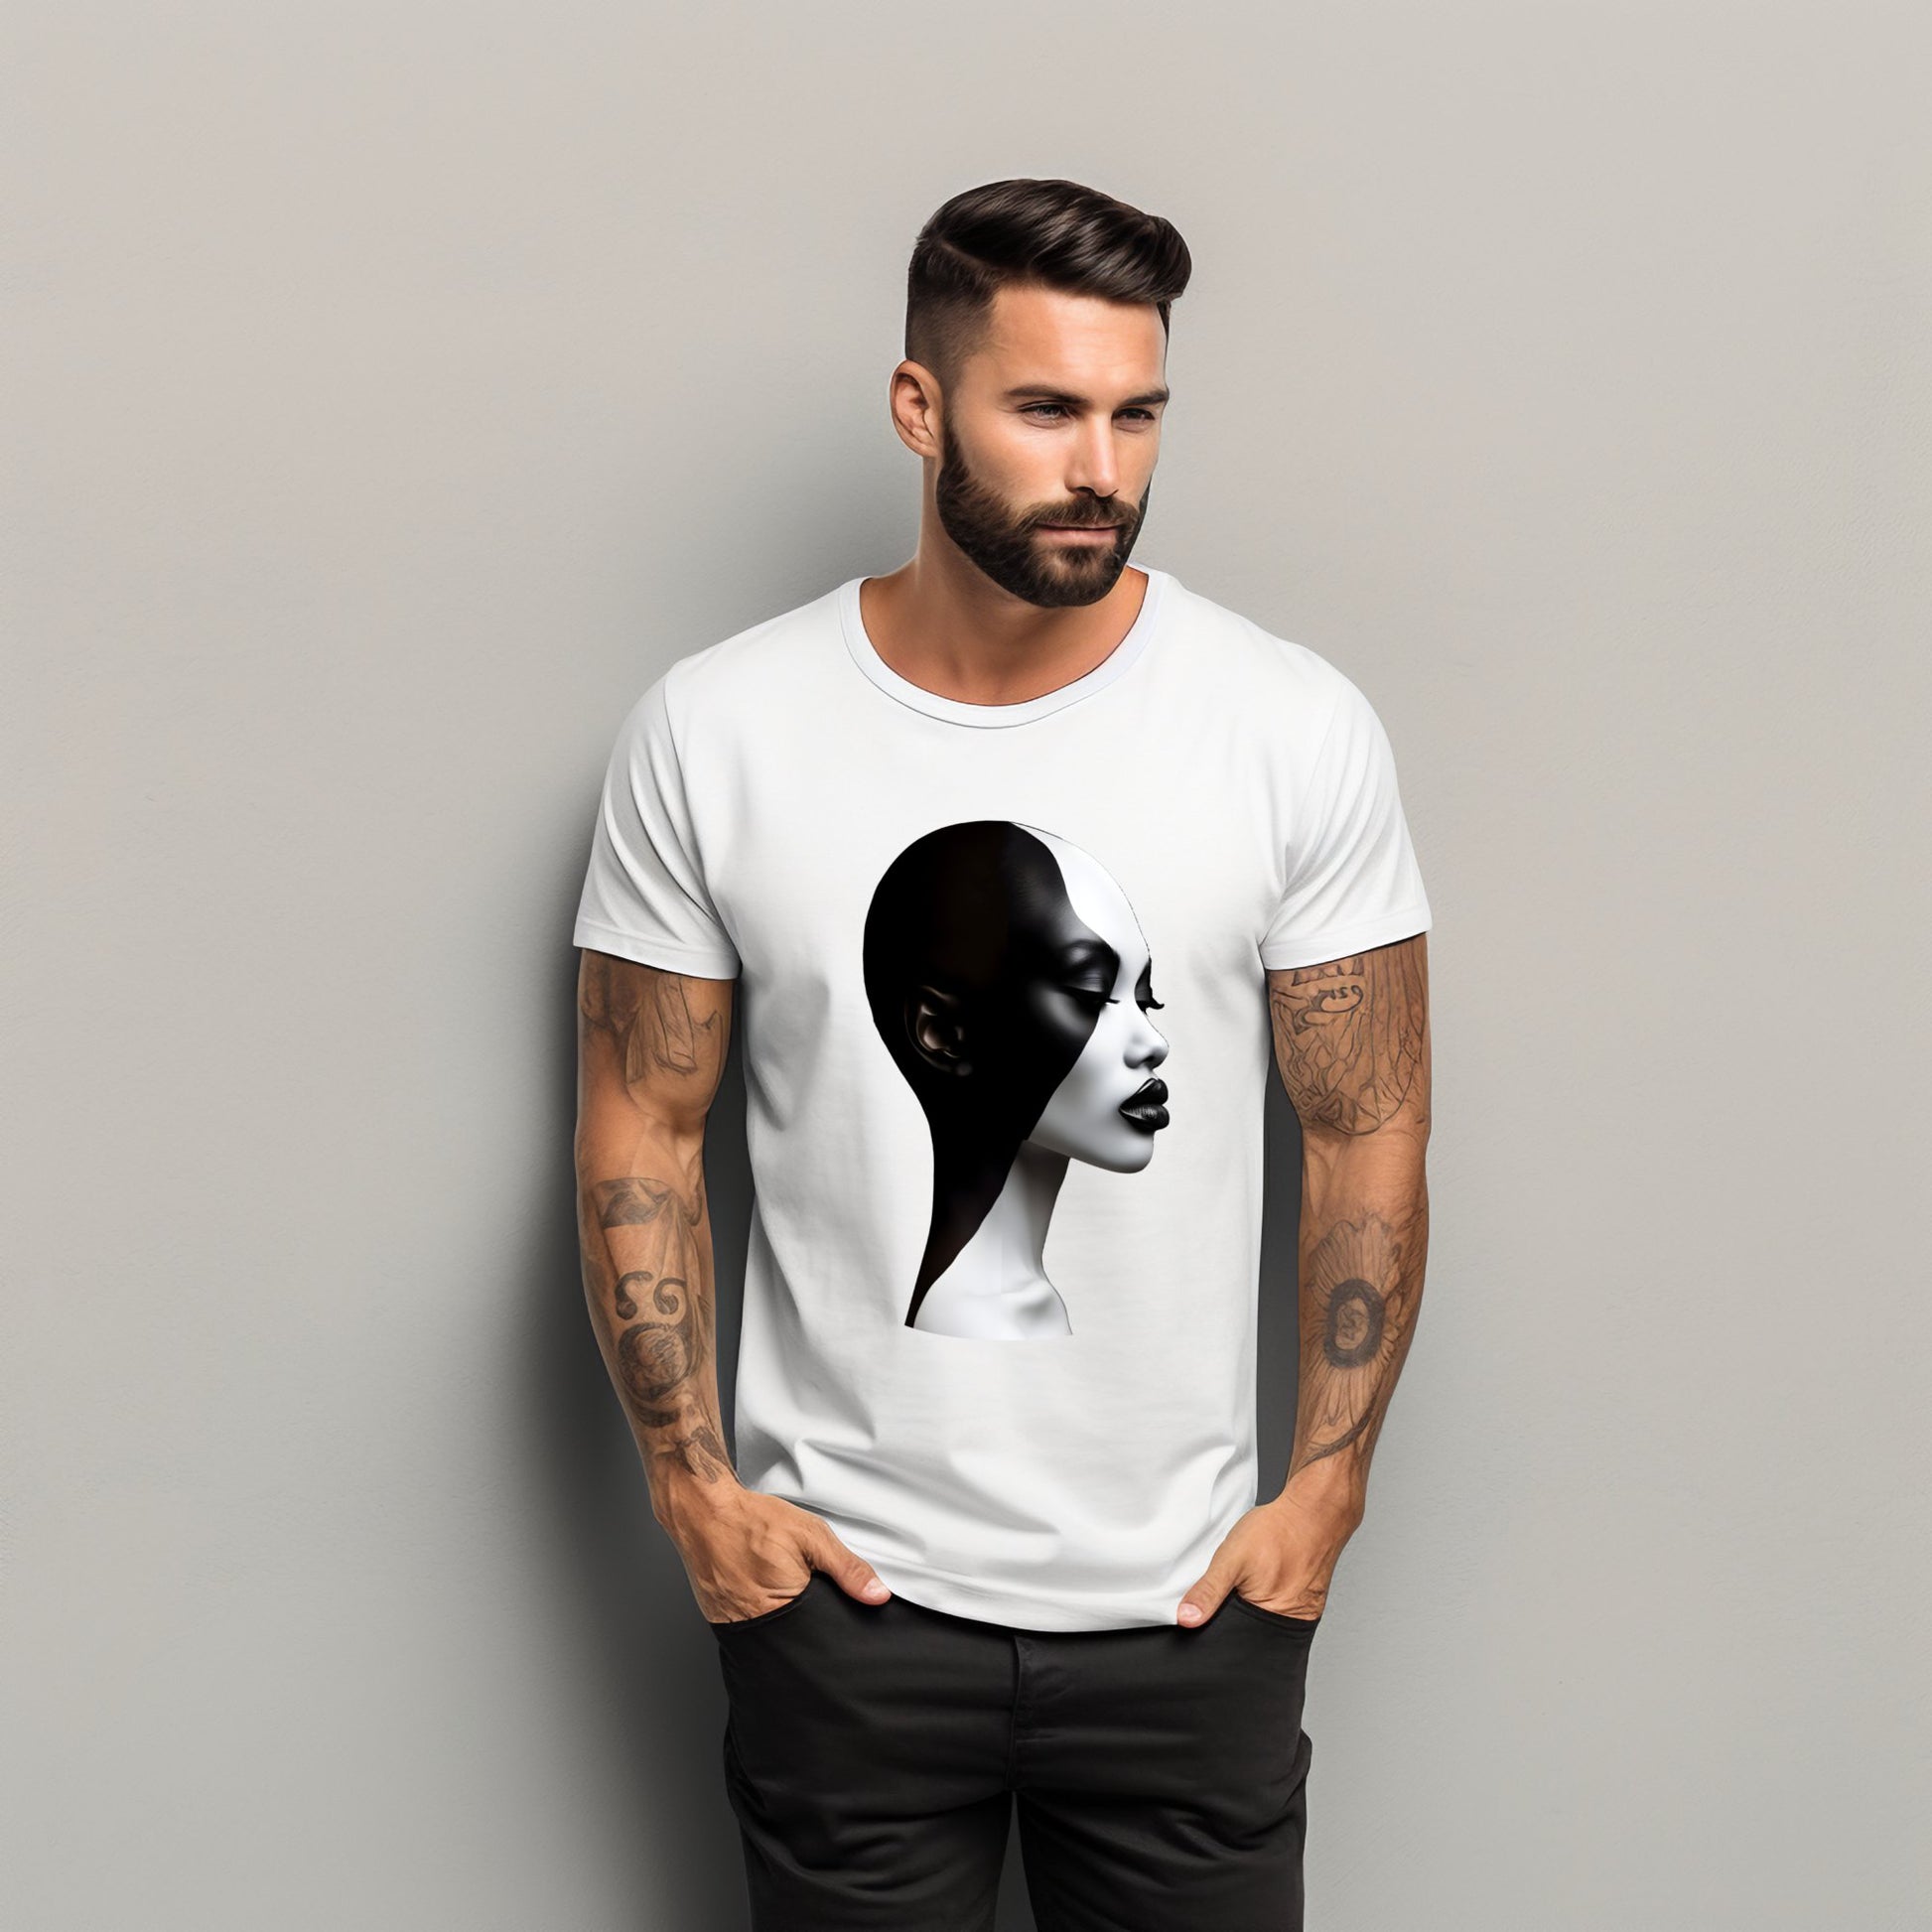 Modernūs vyriški marškinėliai "Black & White" su meniniu portretu, pagaminti Designedbyme.lt ženklu. Stilinga ir unikali apranga, pabrėžianti kontrastą ir individualumą. Ideali dovanos idėja vyrams, tobula gimtadienio dovana, Vyriški marškinėliai, Visi produktai